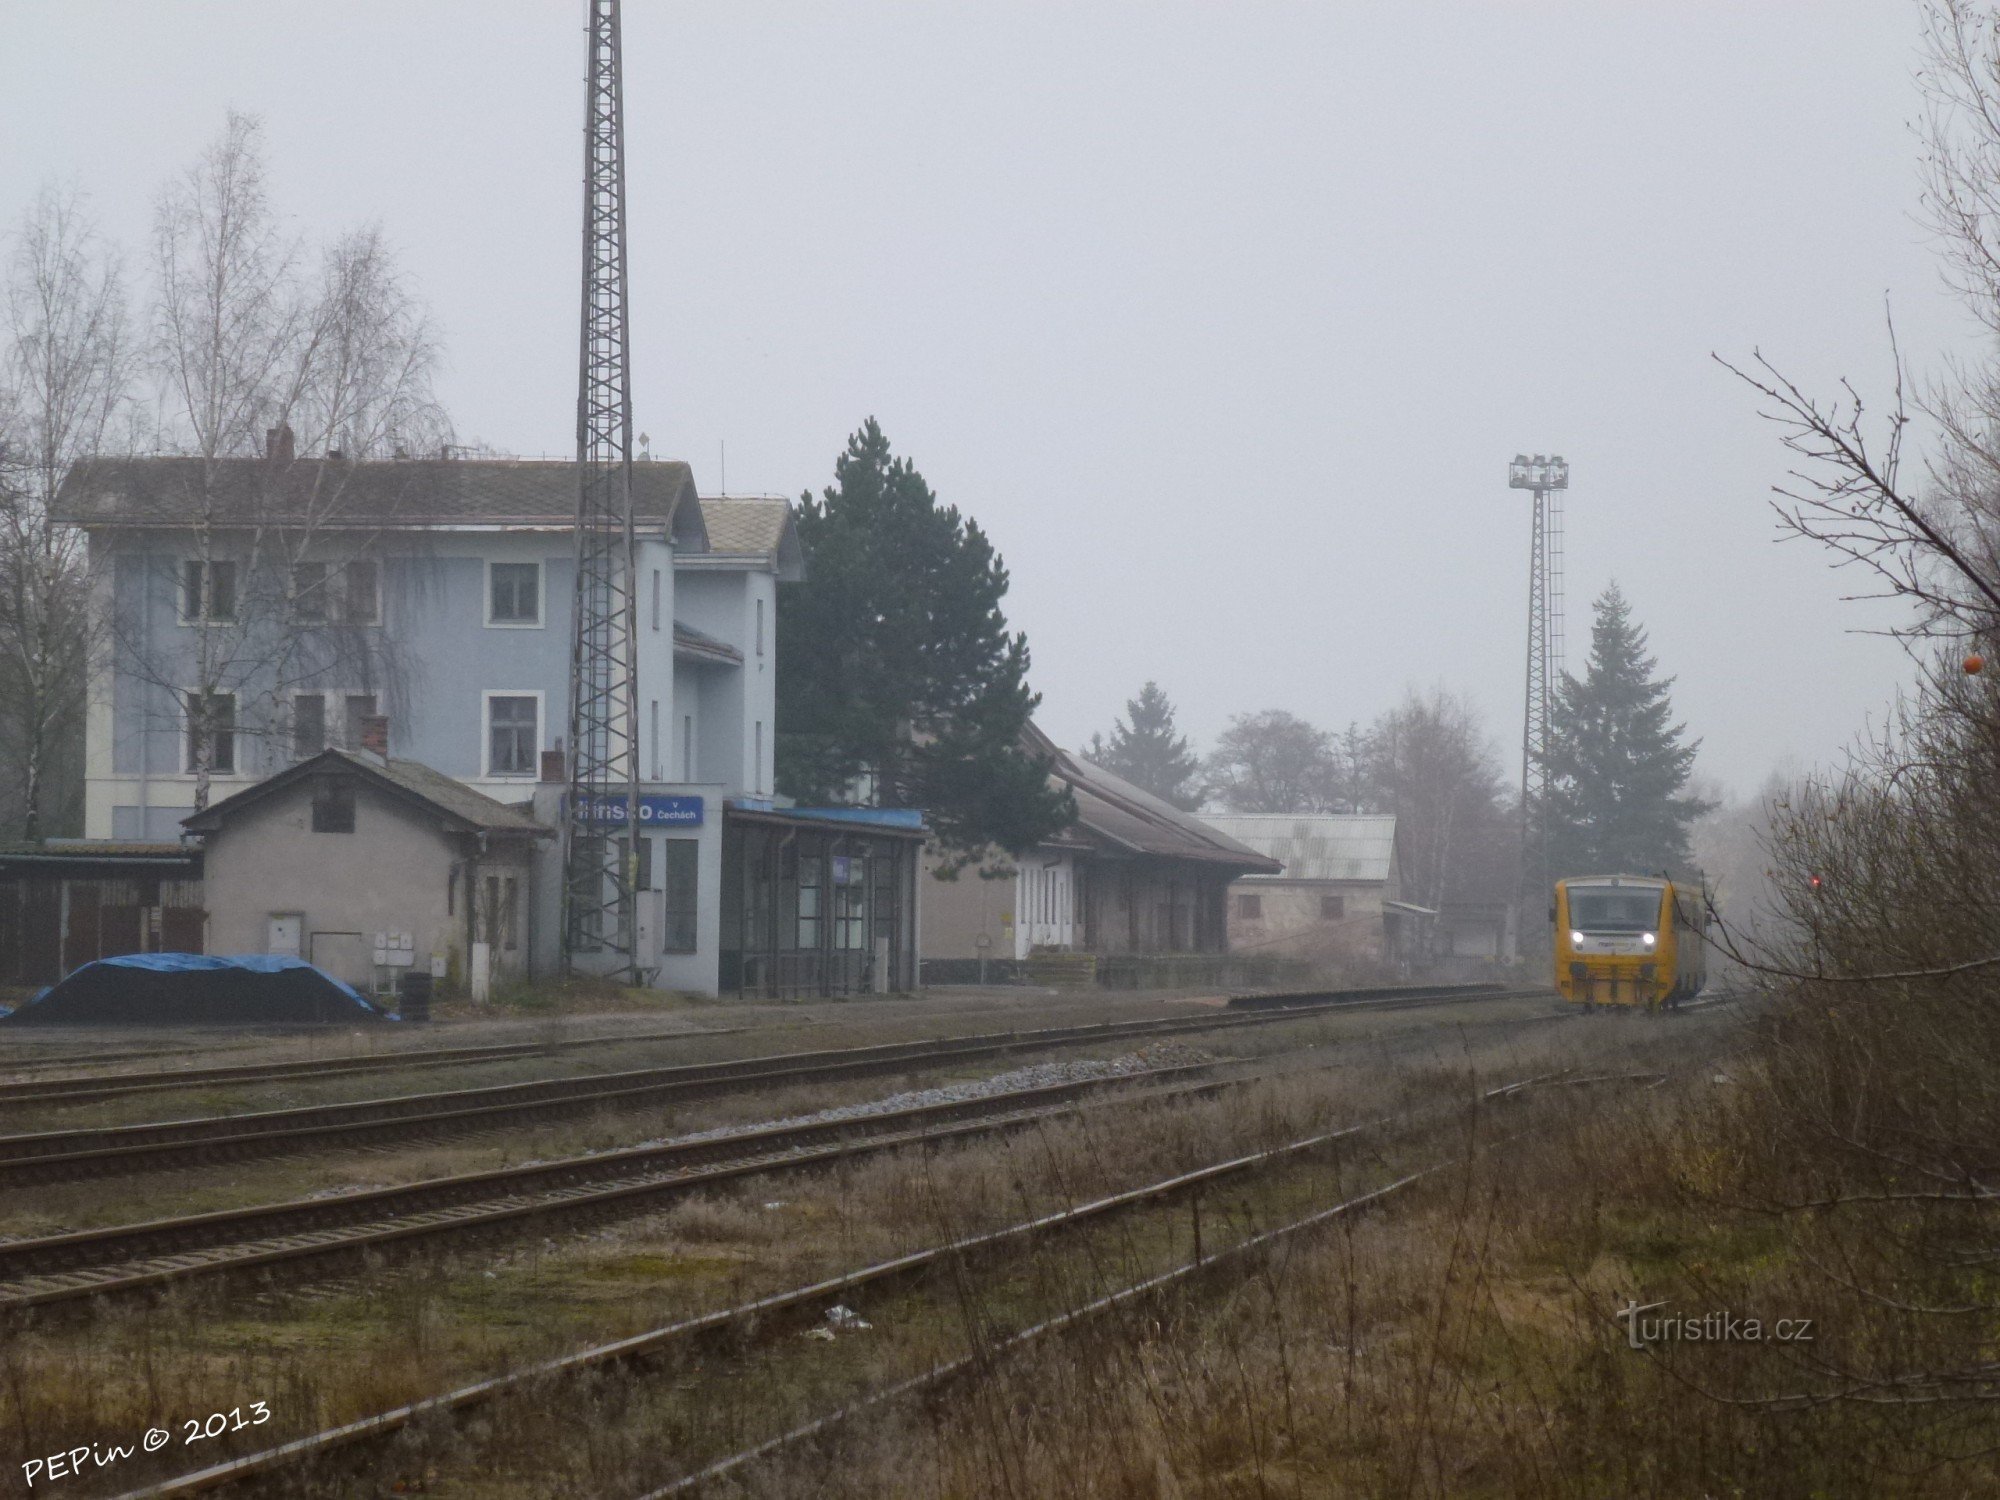 Hlinsko in Bohemen, treinstation, spoorwerf